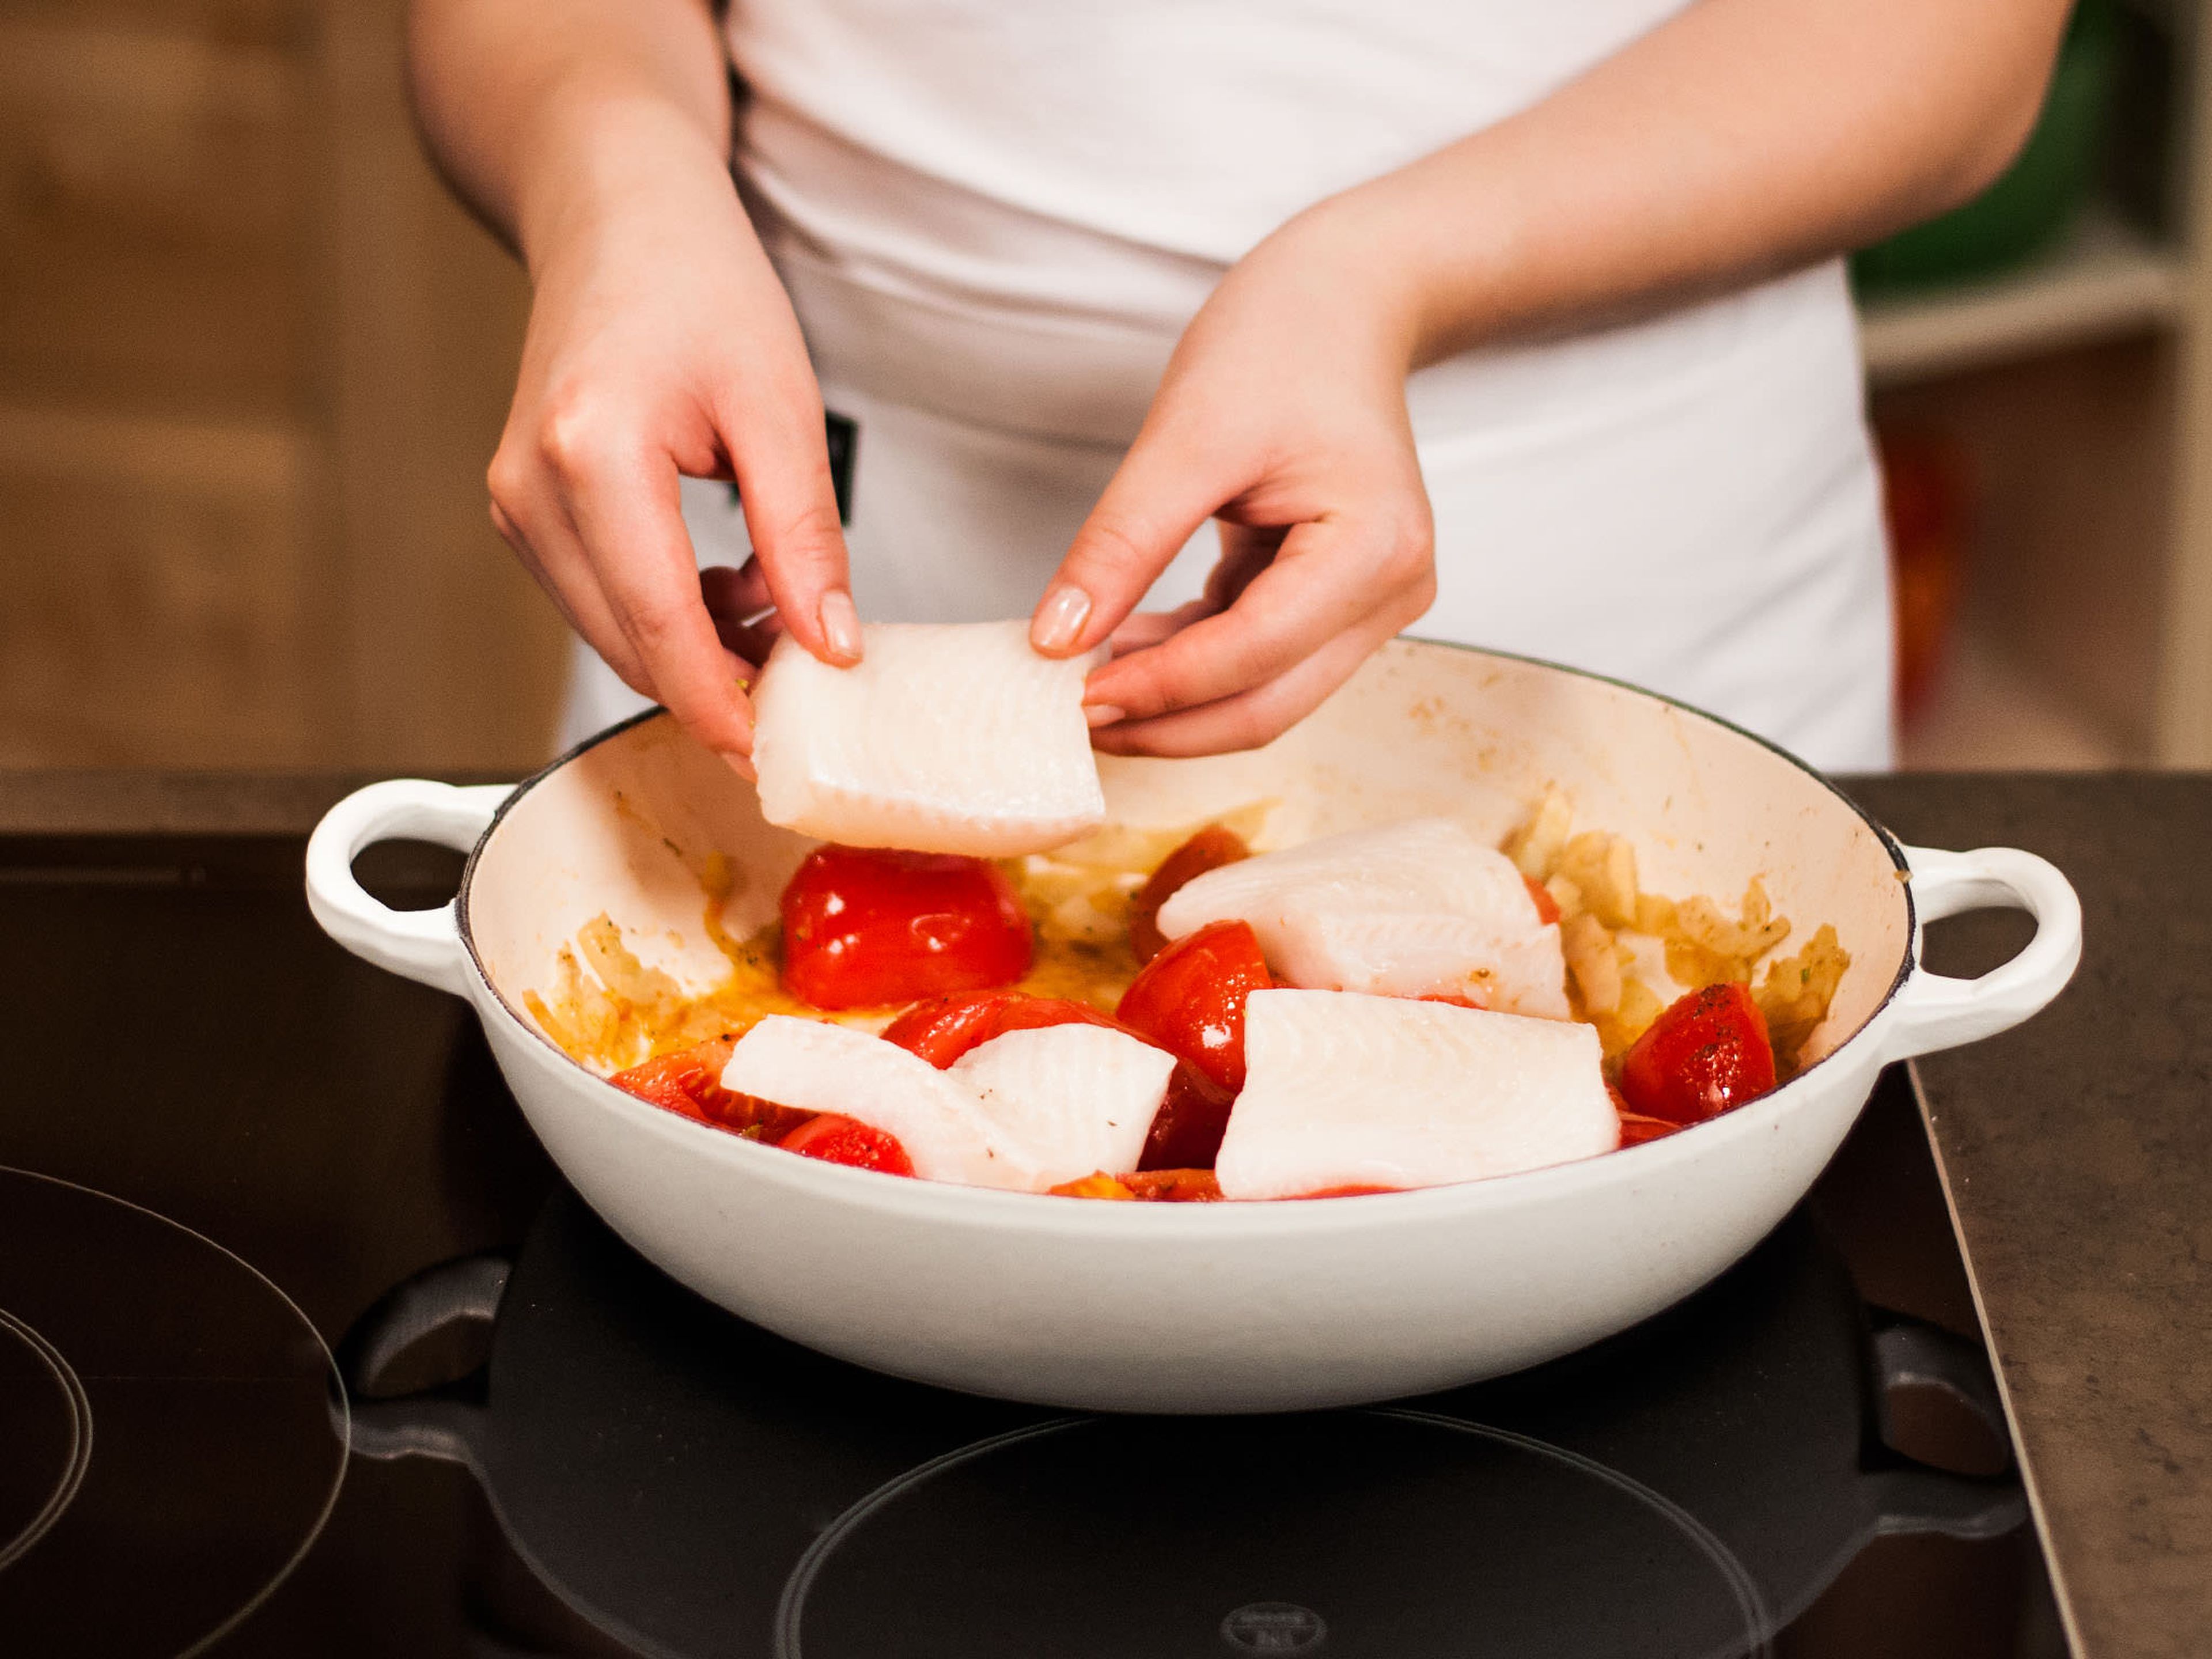 Seelachs auf das Tomatenbett legen. Jeweils eine Zitronenscheibe auf den Filets platzieren, salzen, pfeffern und bei geschlossenem Deckel ca. 8 Min. bei mittlerer Hitze garen, bis der Fisch glasig ist. Auf Couscous anrichten.